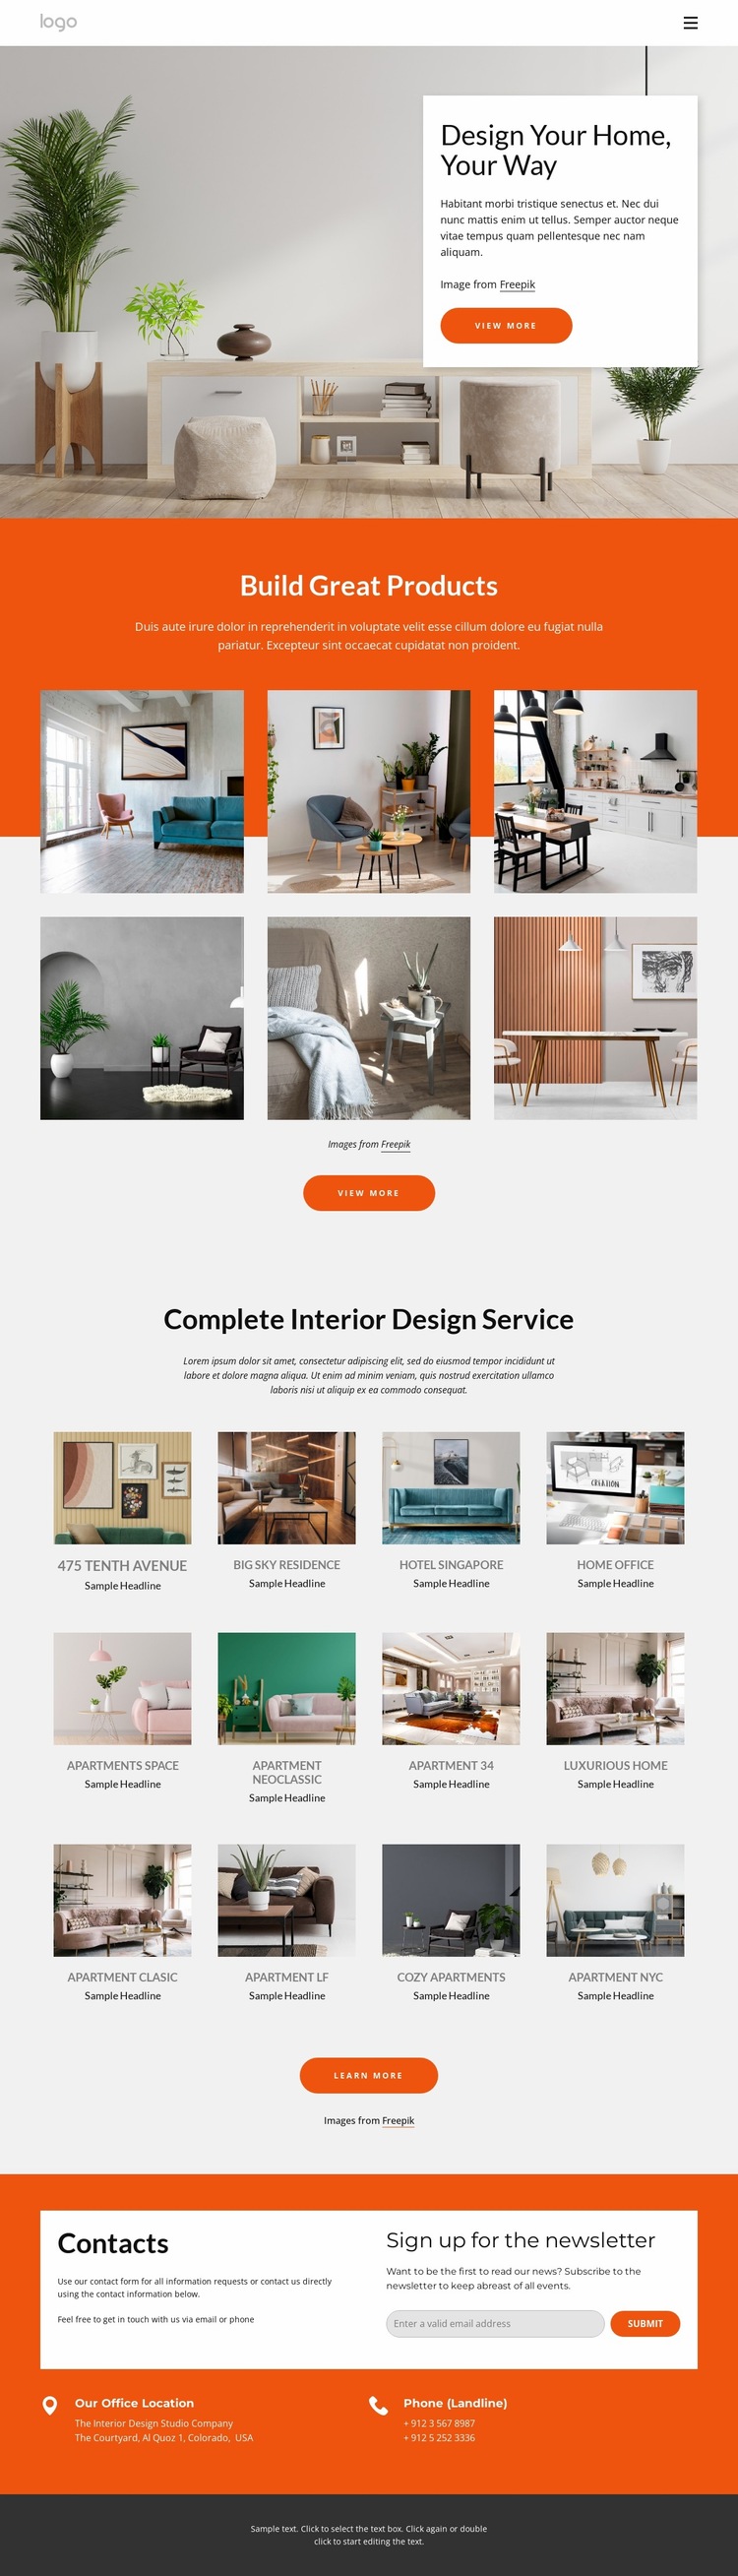 Interior design portfolio Website Builder Templates